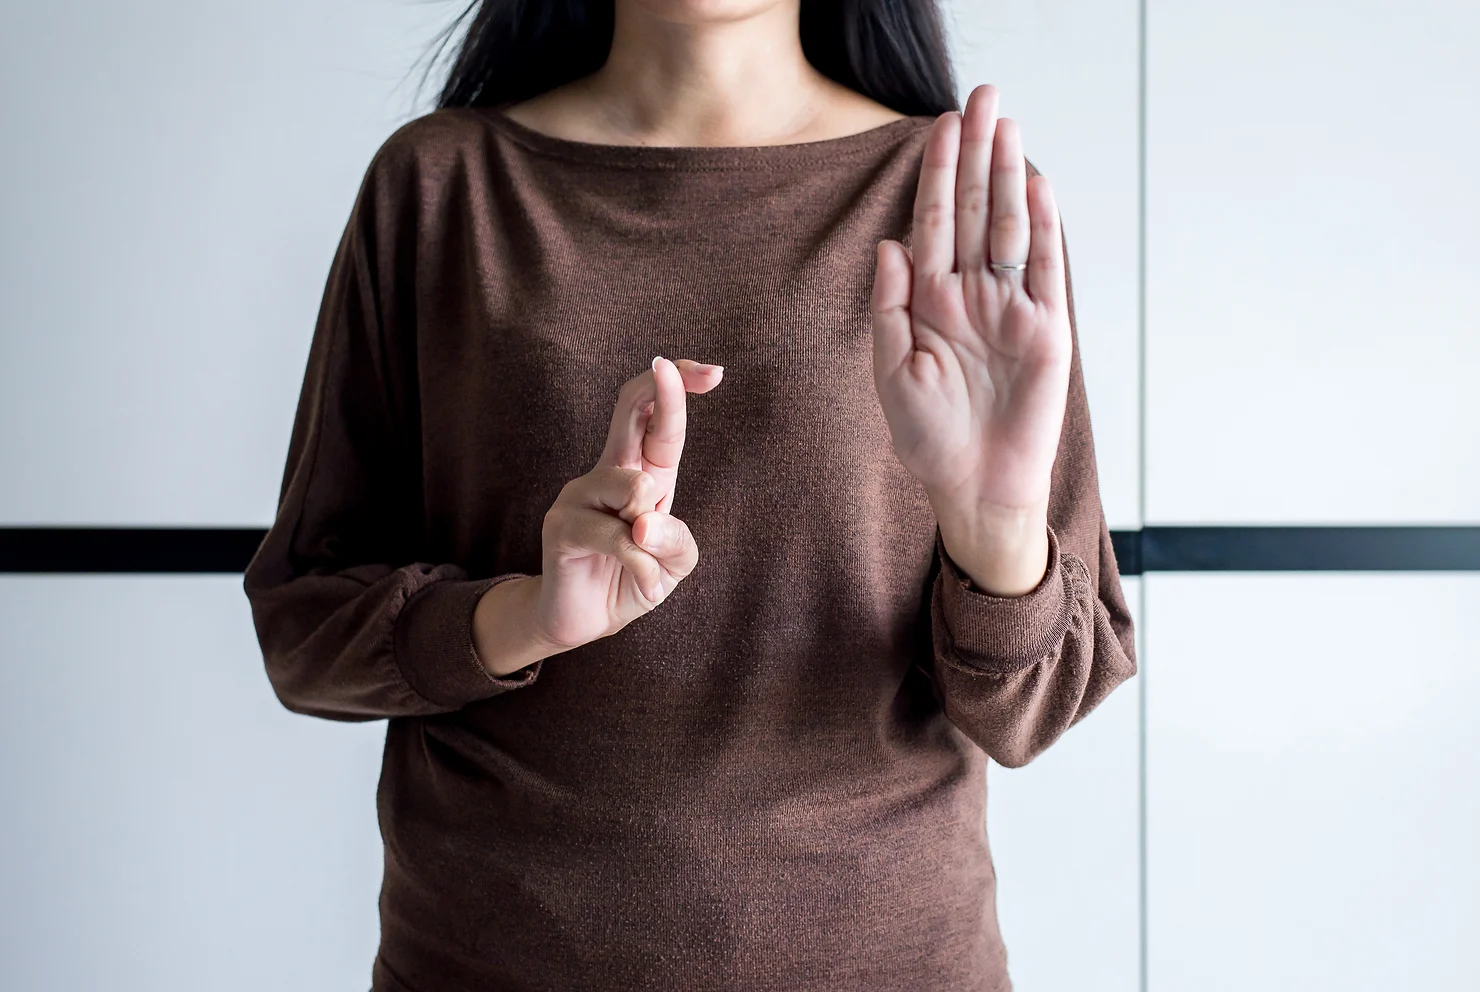 Women using sign language